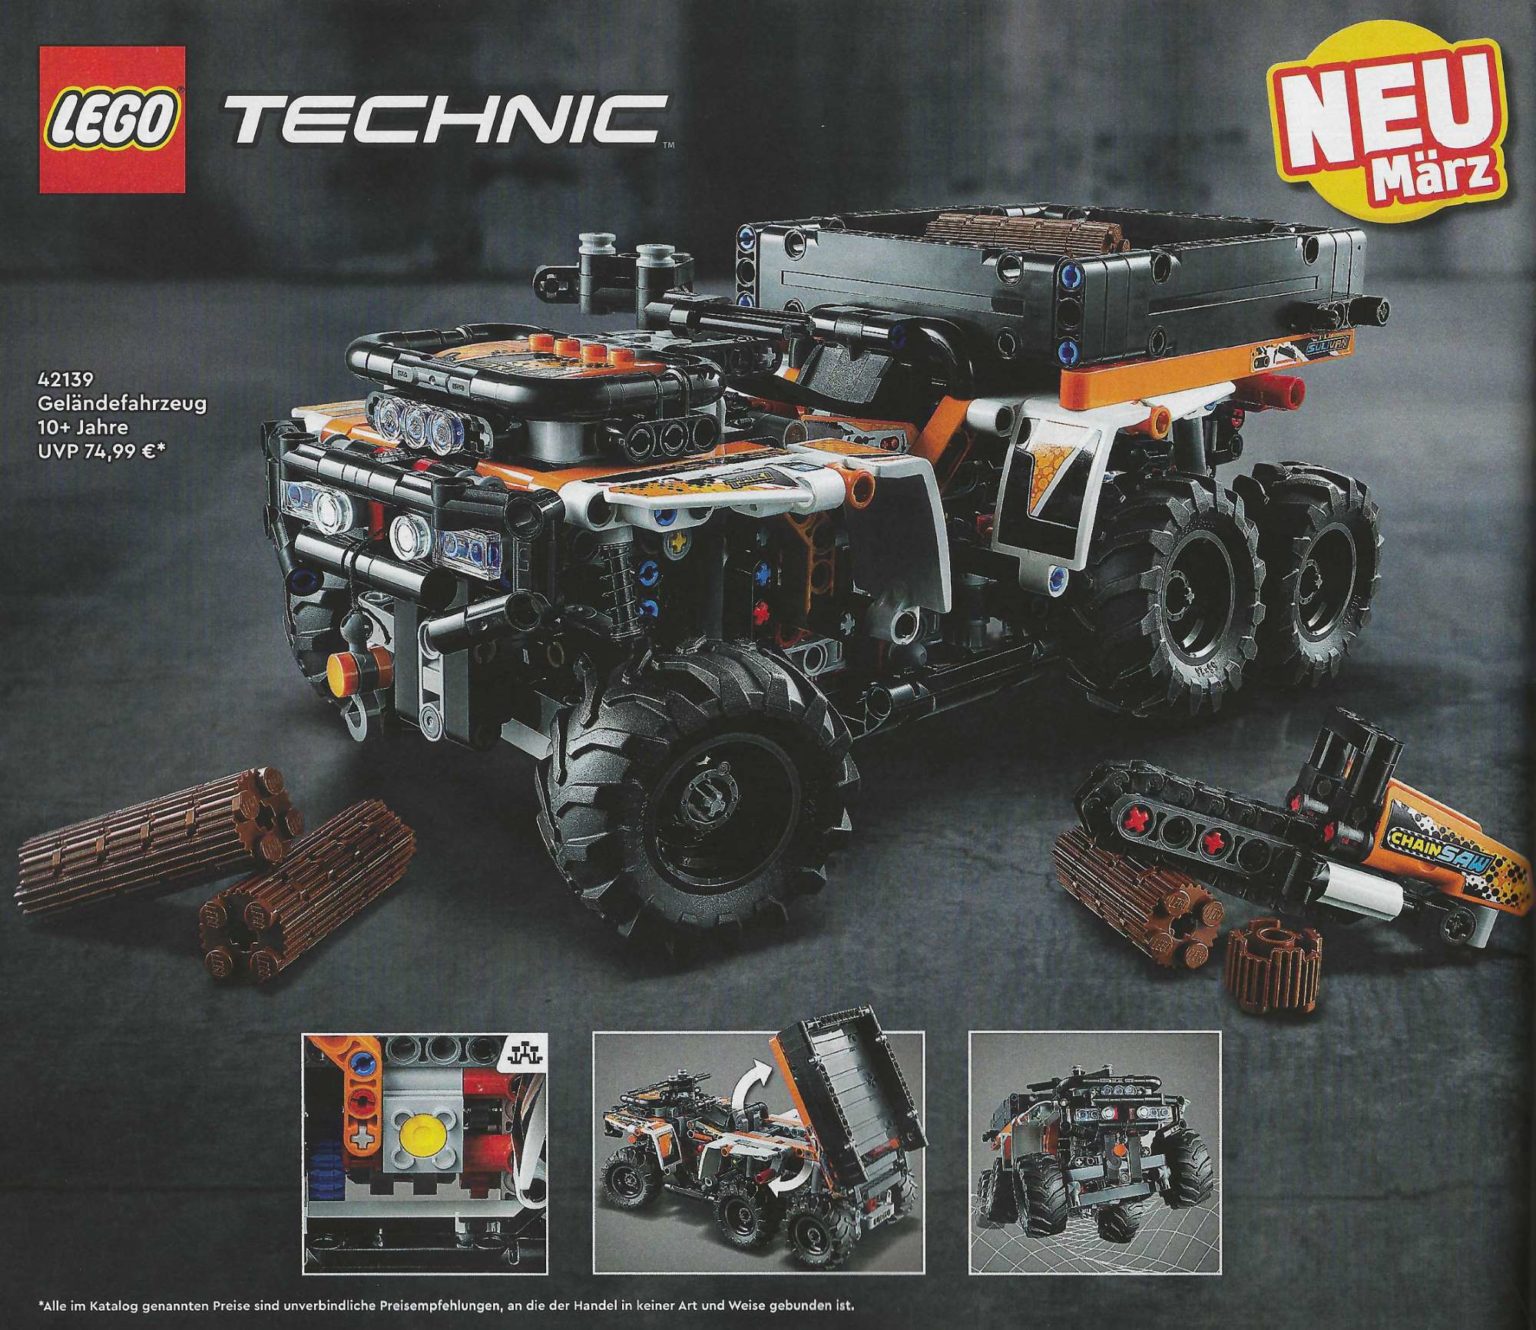 Technic Fan (42136) John - Brick Revealed The LEGO Deere Tractor 9620R 4WD